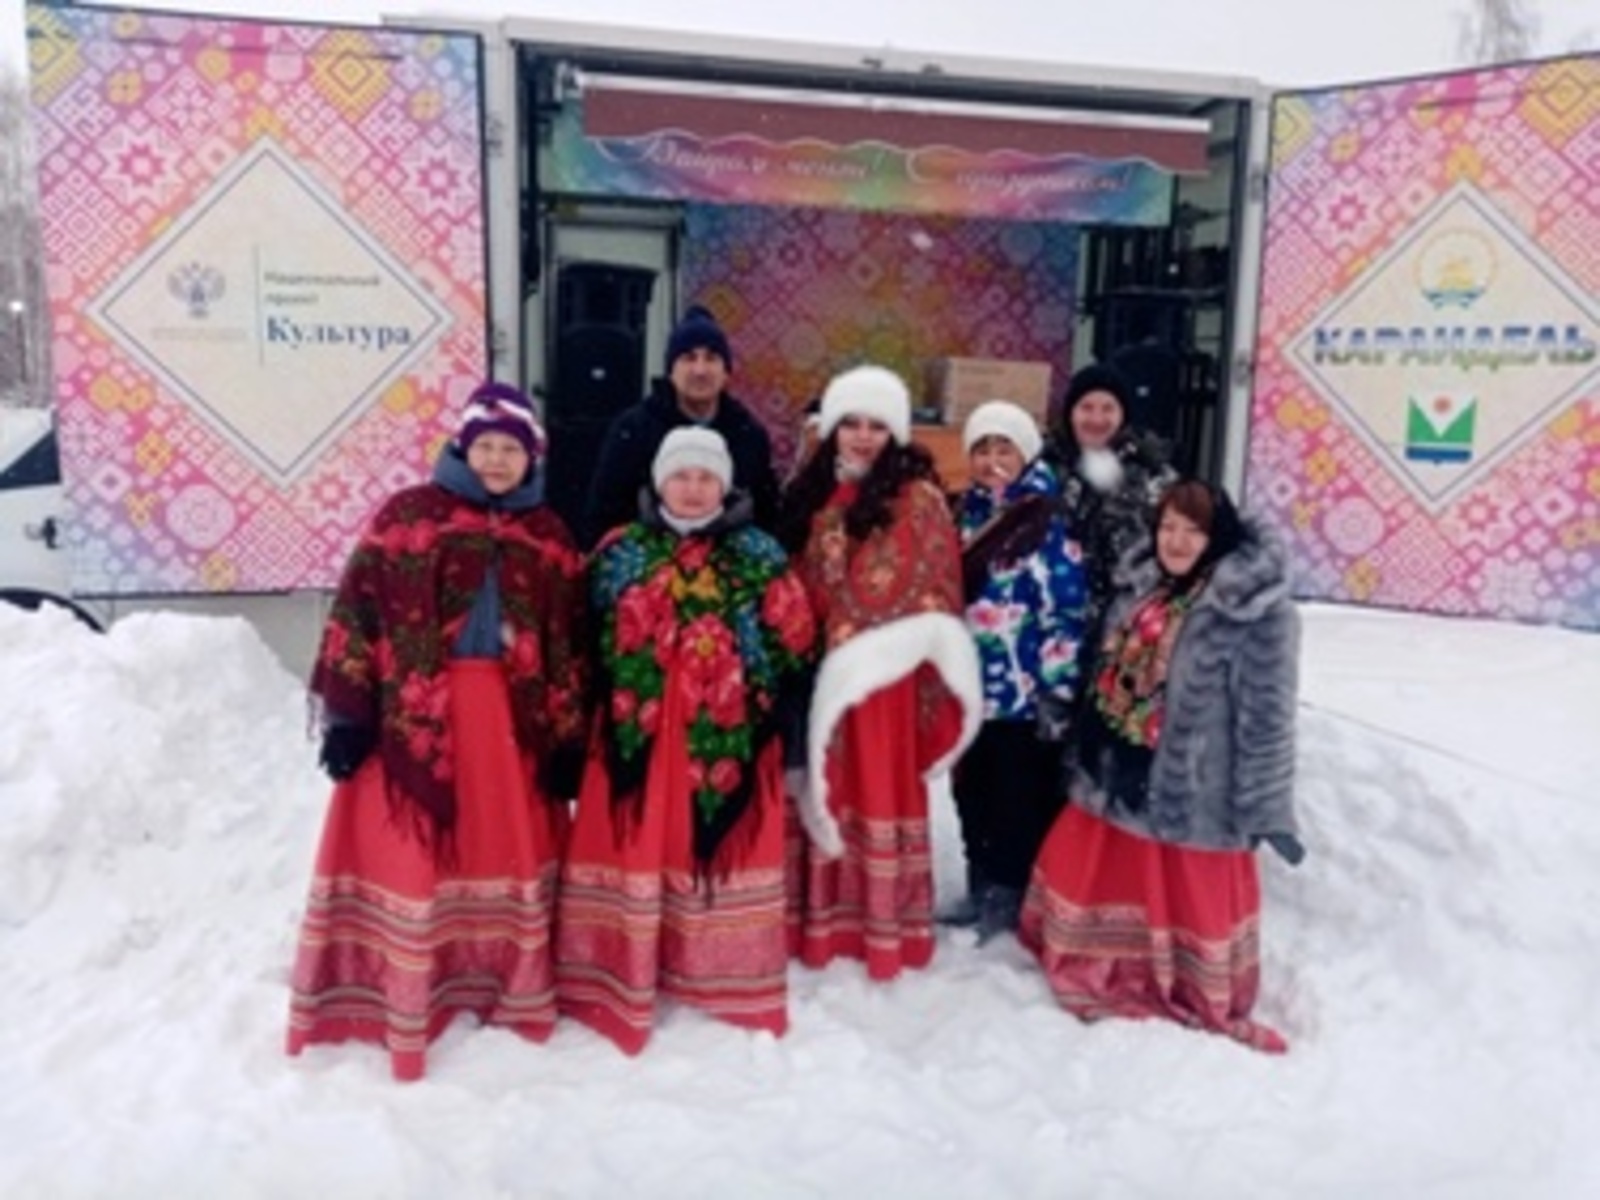 Автоклуб Караидельского района подарил праздник Масленицы отдыхающим комплекса "Звездный"